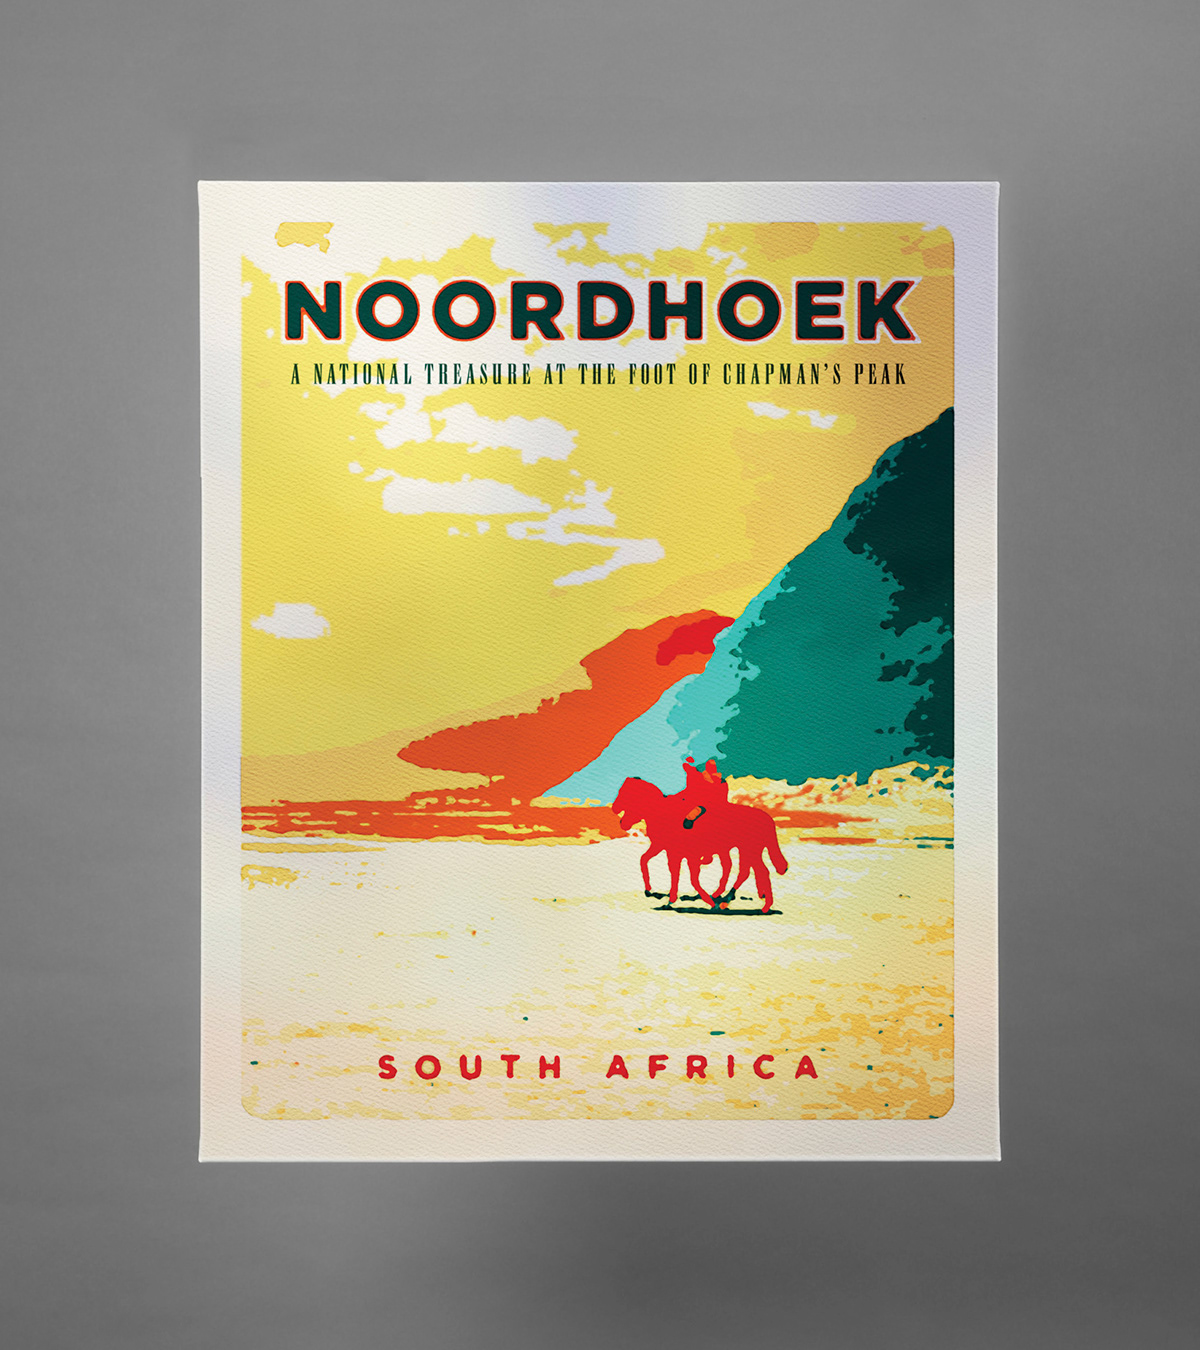 Camissa posters noordhoek chapman's peak cape town Kirstenbosch redt Table Bay